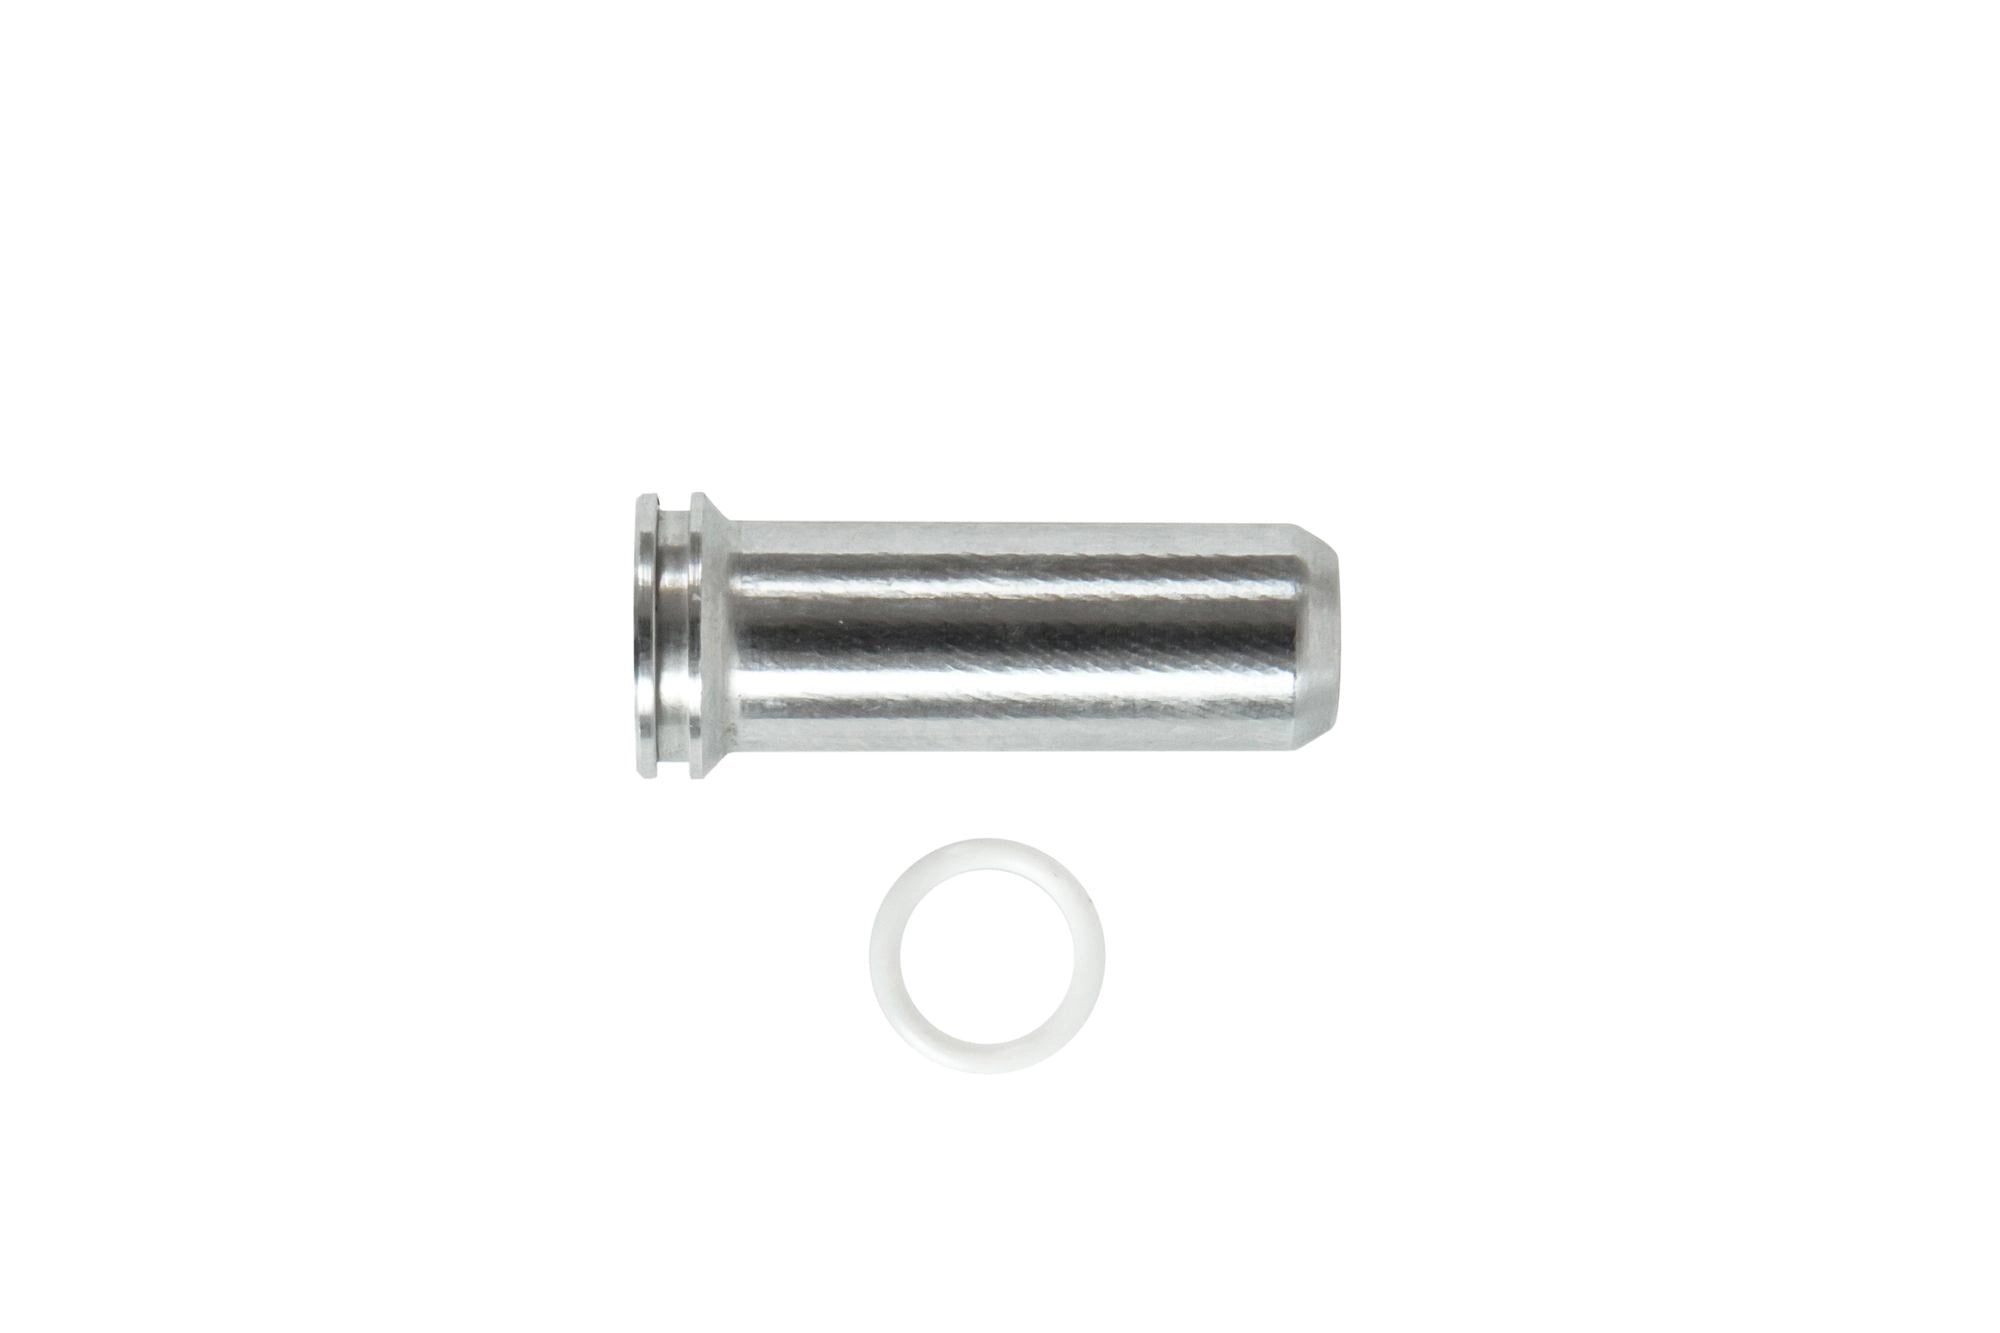 Aluminum CNC Nozzle - 35.4 mm